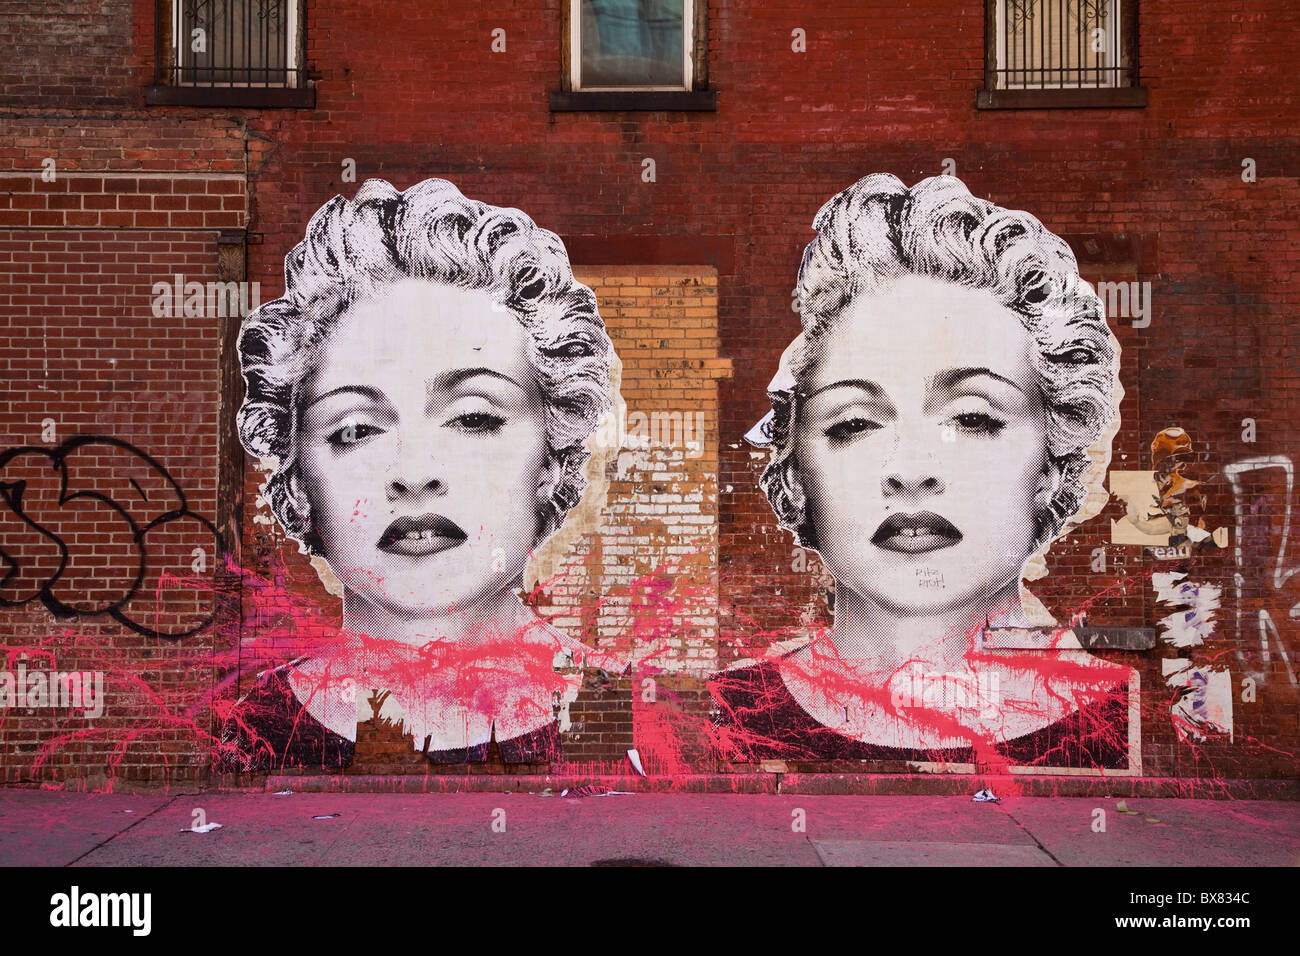 Marilyn Monroe un graffiti sur un mur dans le quartier branché de Meat Packing District à New York. Banque D'Images